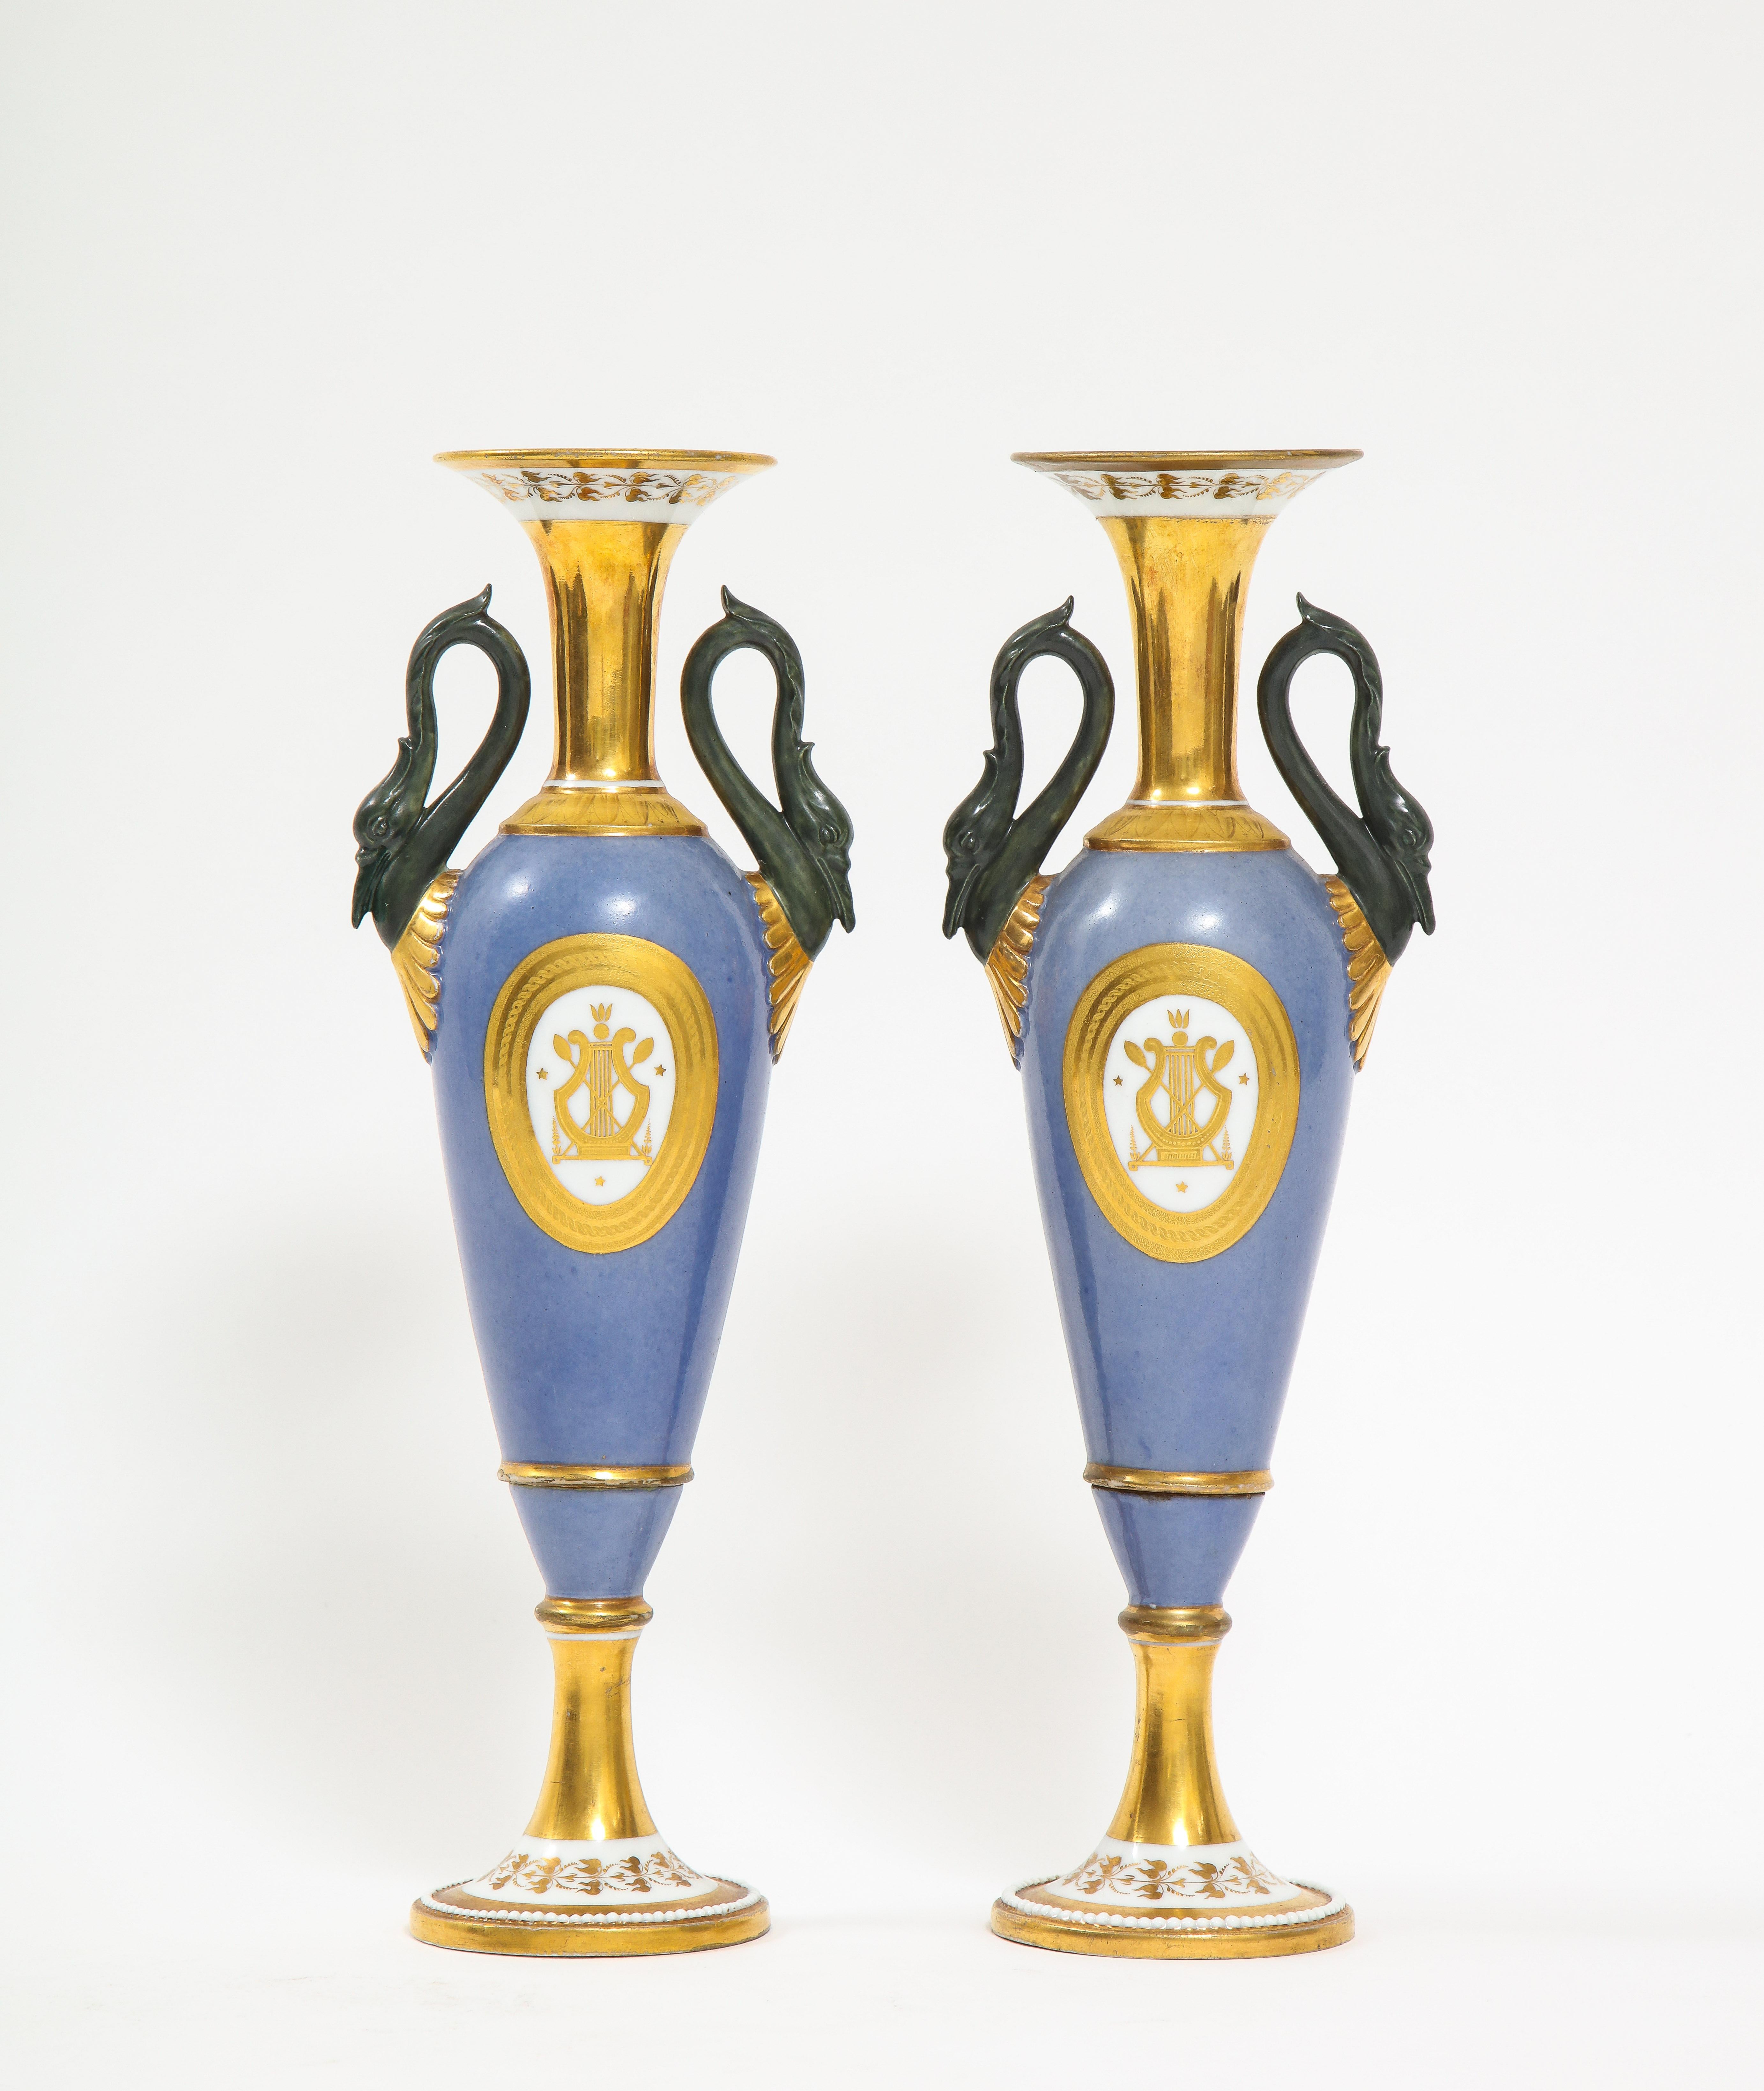 Une belle paire de vases en porcelaine de Paris en forme de cygne, de style Empire, datant du 19ème siècle. Chacun d'entre eux est magnifiquement peint à la main sur un fond bleu clair, puis orné d'éléments peints à l'or 24 carats autour du col, des